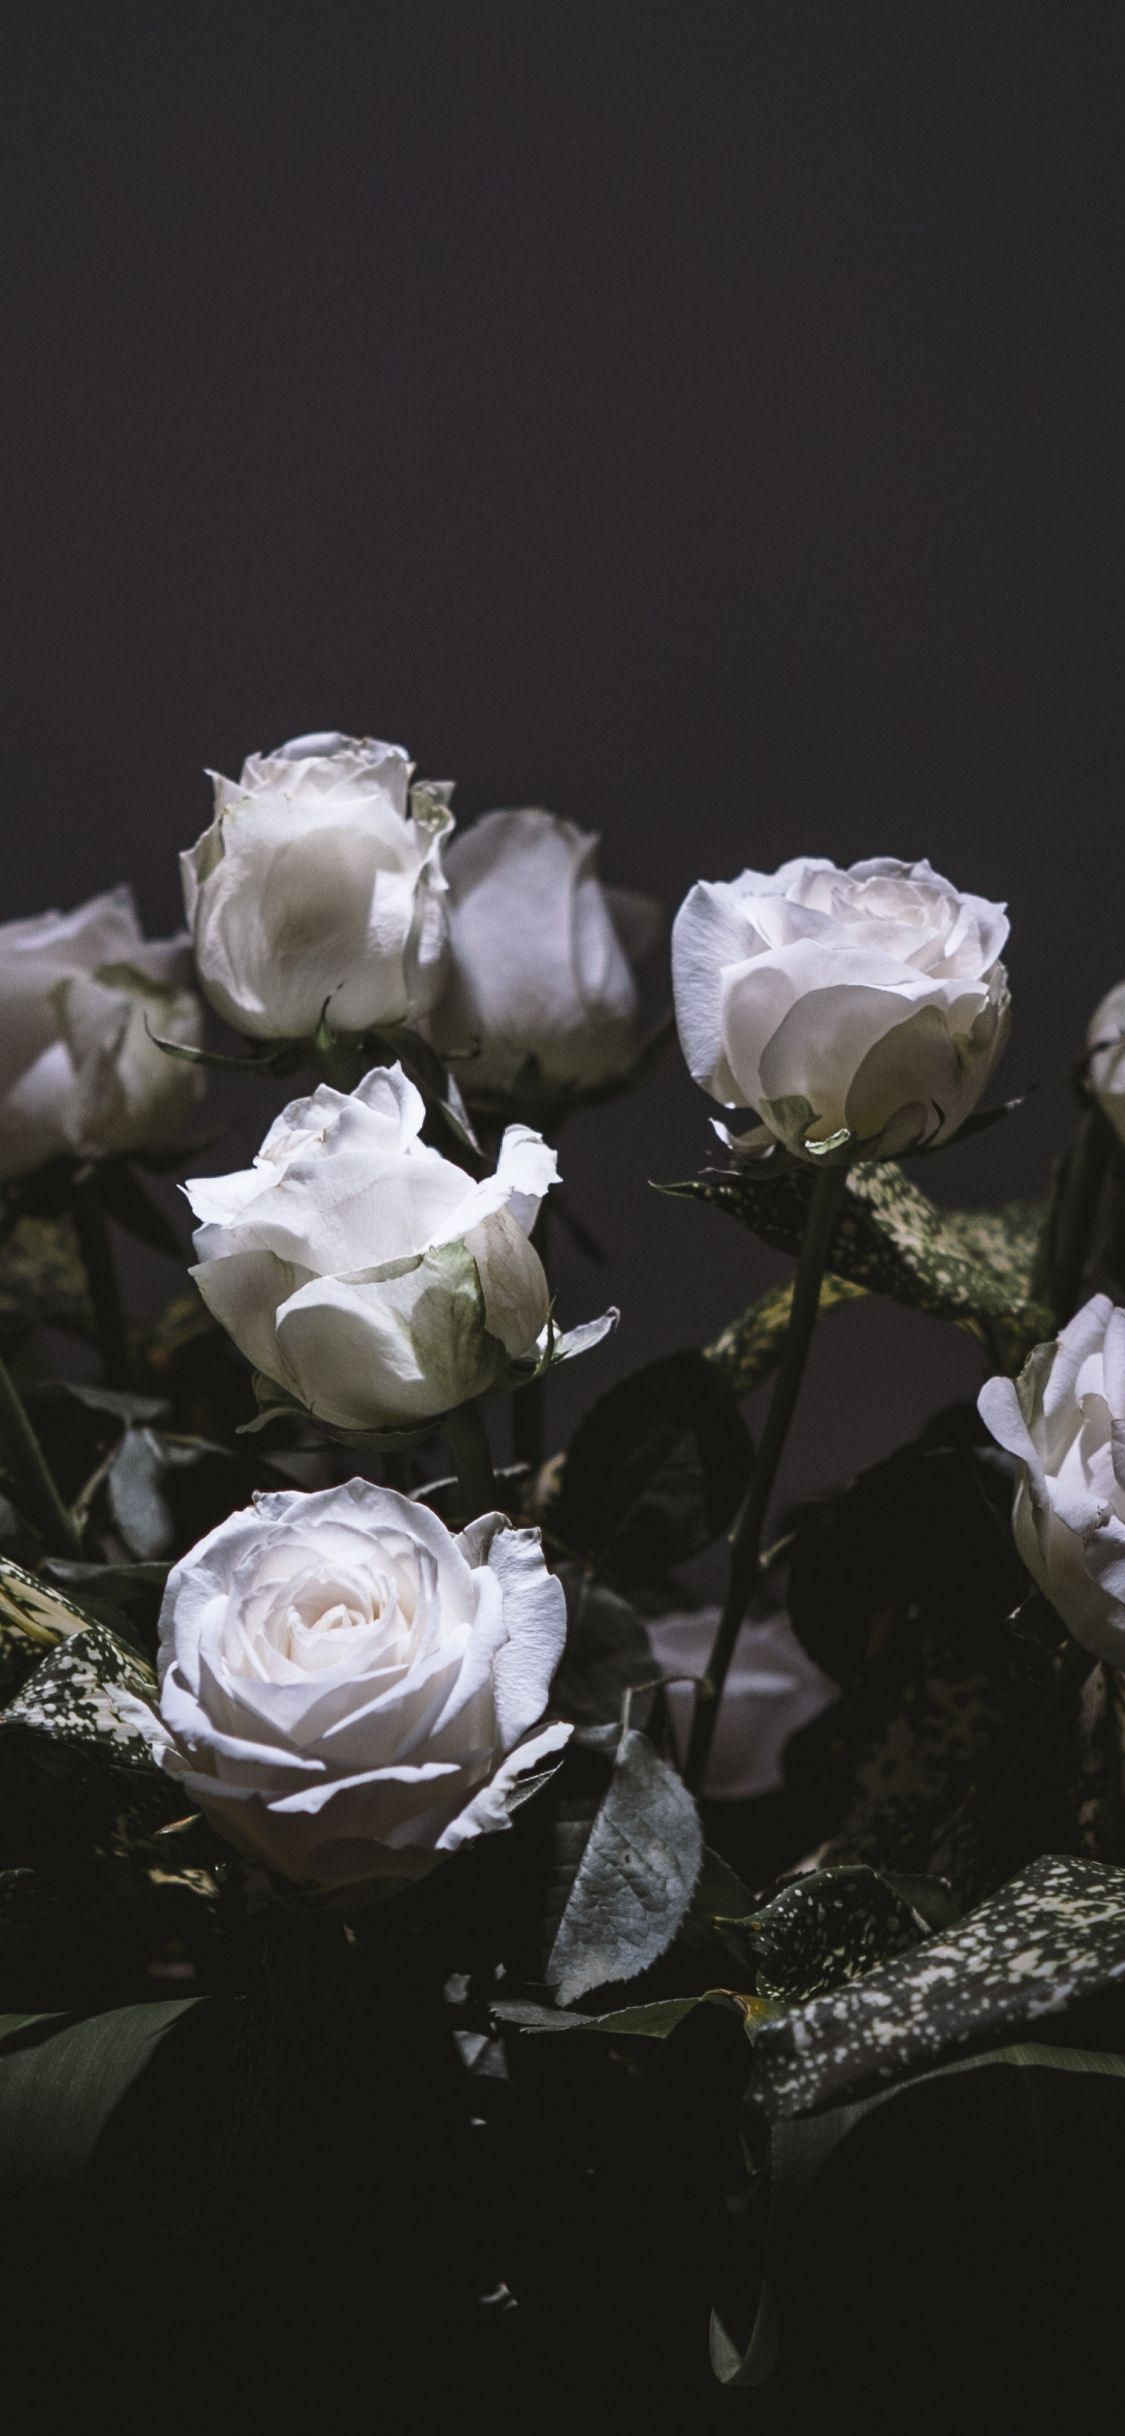 41-414465_white-roses-bouquet-portrait-wallpaper-white-roses-wallpaper.jpg